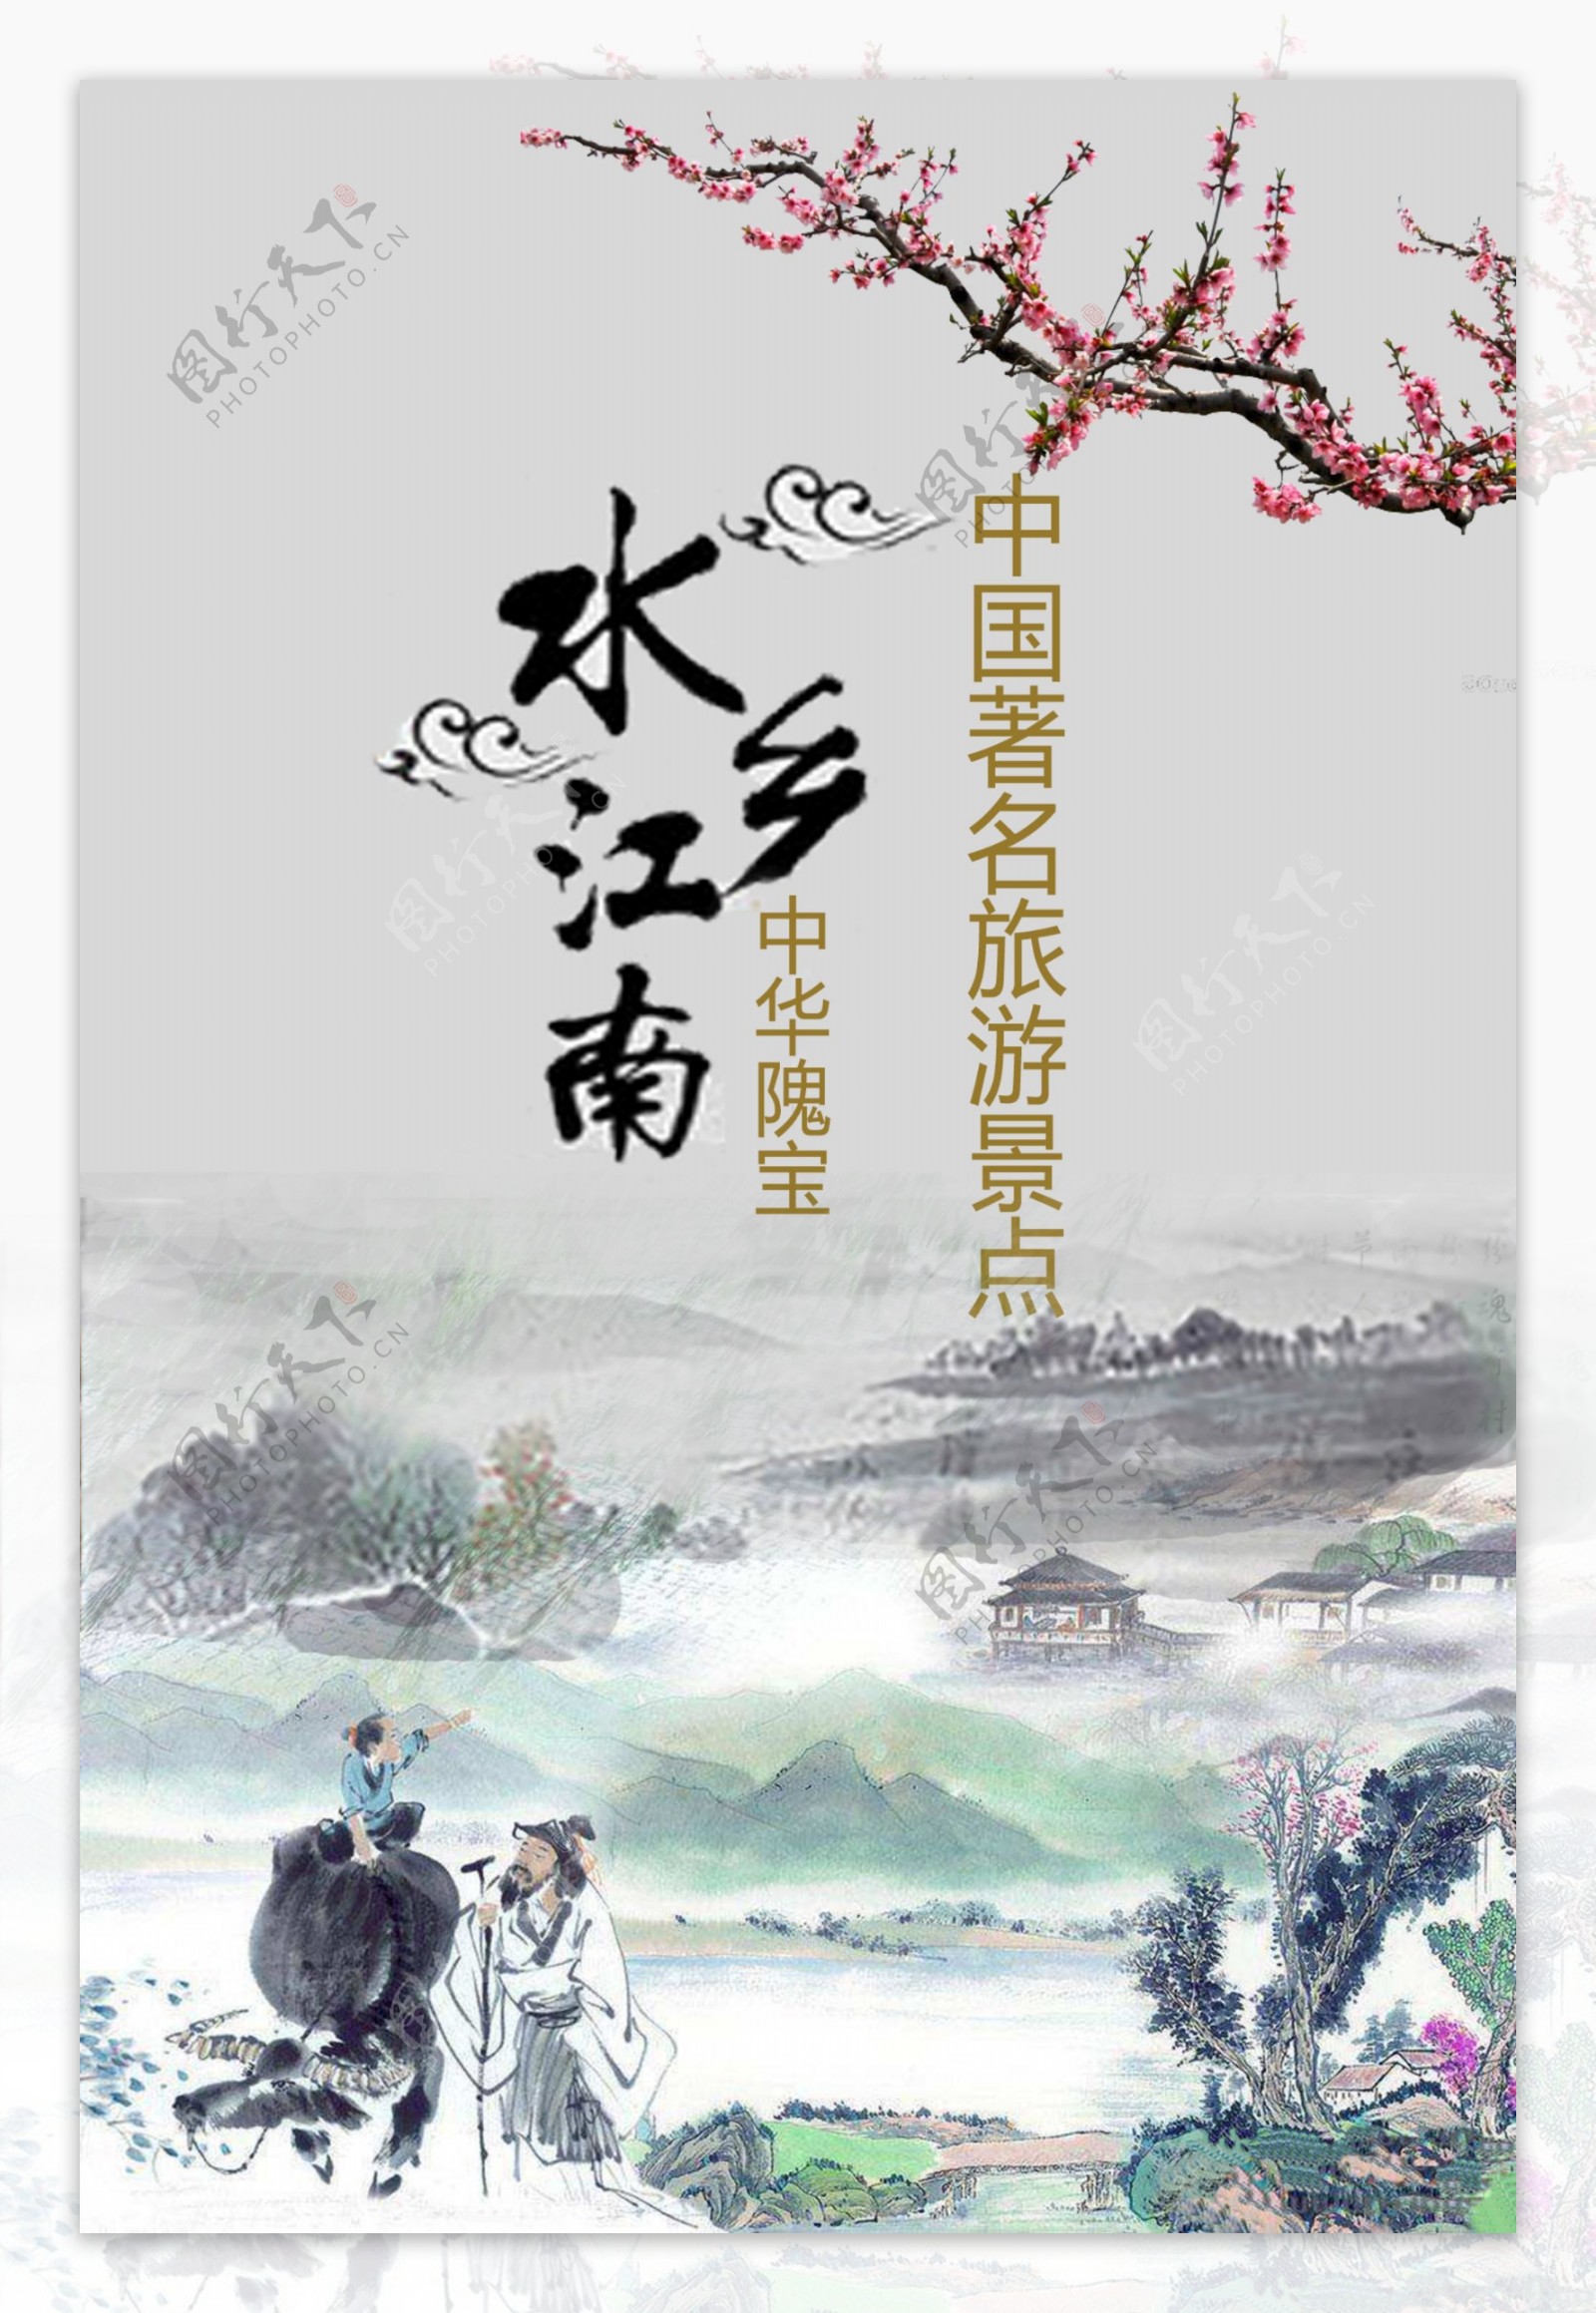 中式古典水墨风格旅游海报